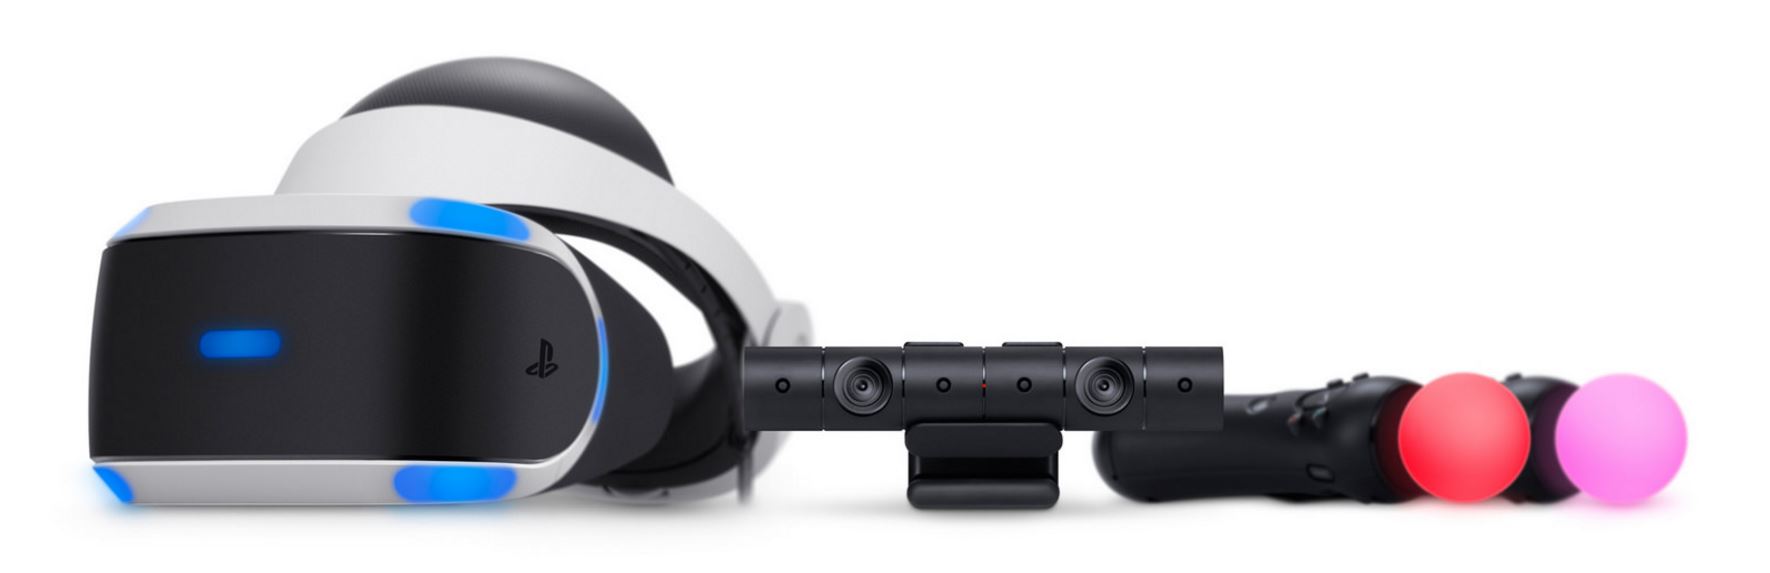 VR-Headset-Markt soll sich bis 2020 verzehnfachen, Sony ist Marktleader